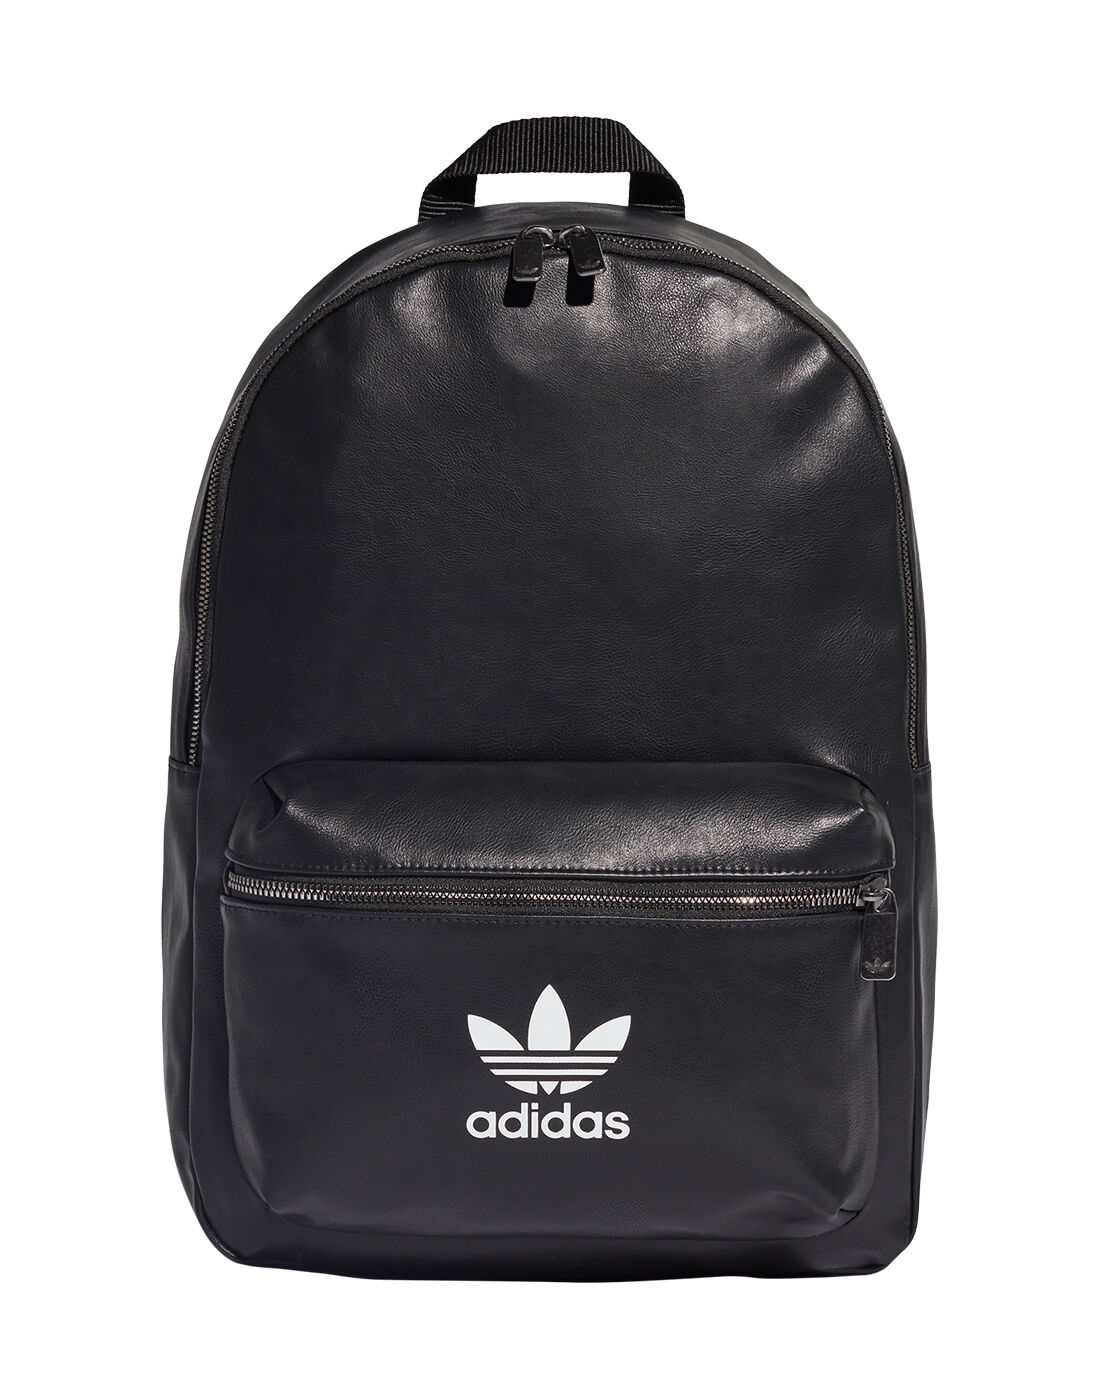 adidas Originals Mini Leather Item Bag 